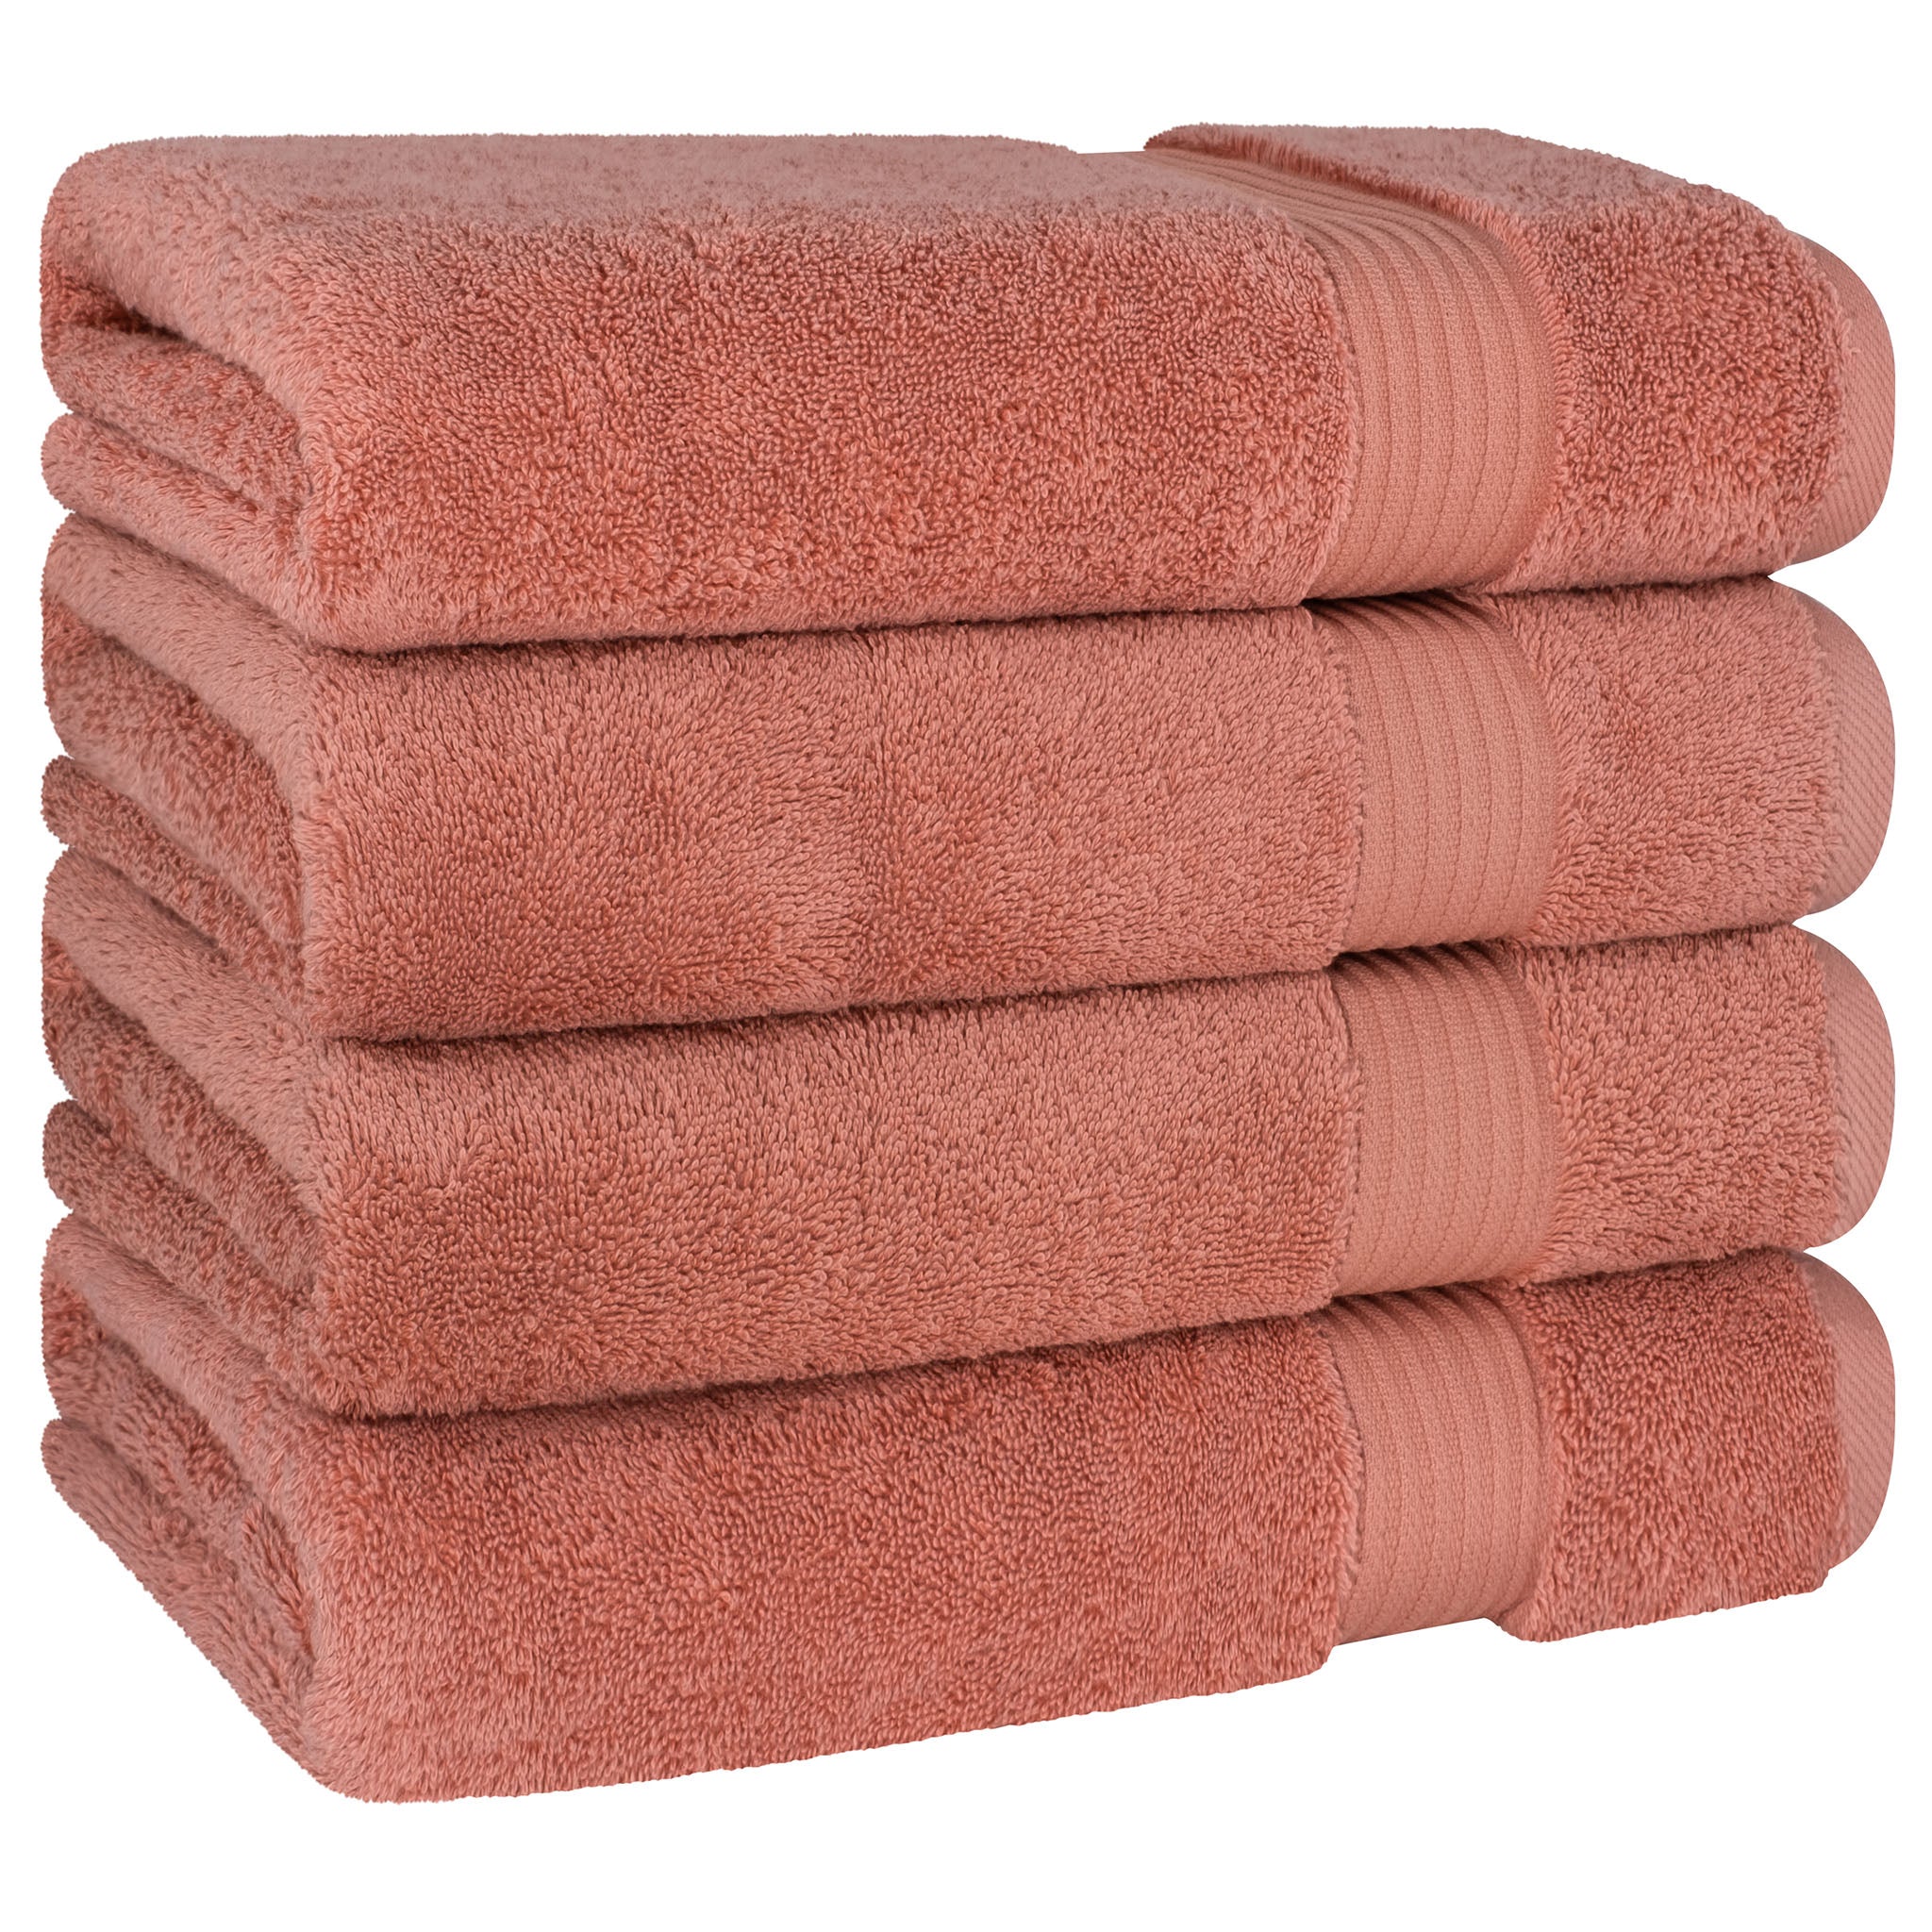 American Soft Linen Bekos 100% Cotton Turkish Towels, 4 Piece Bath Towel Set -coral-05